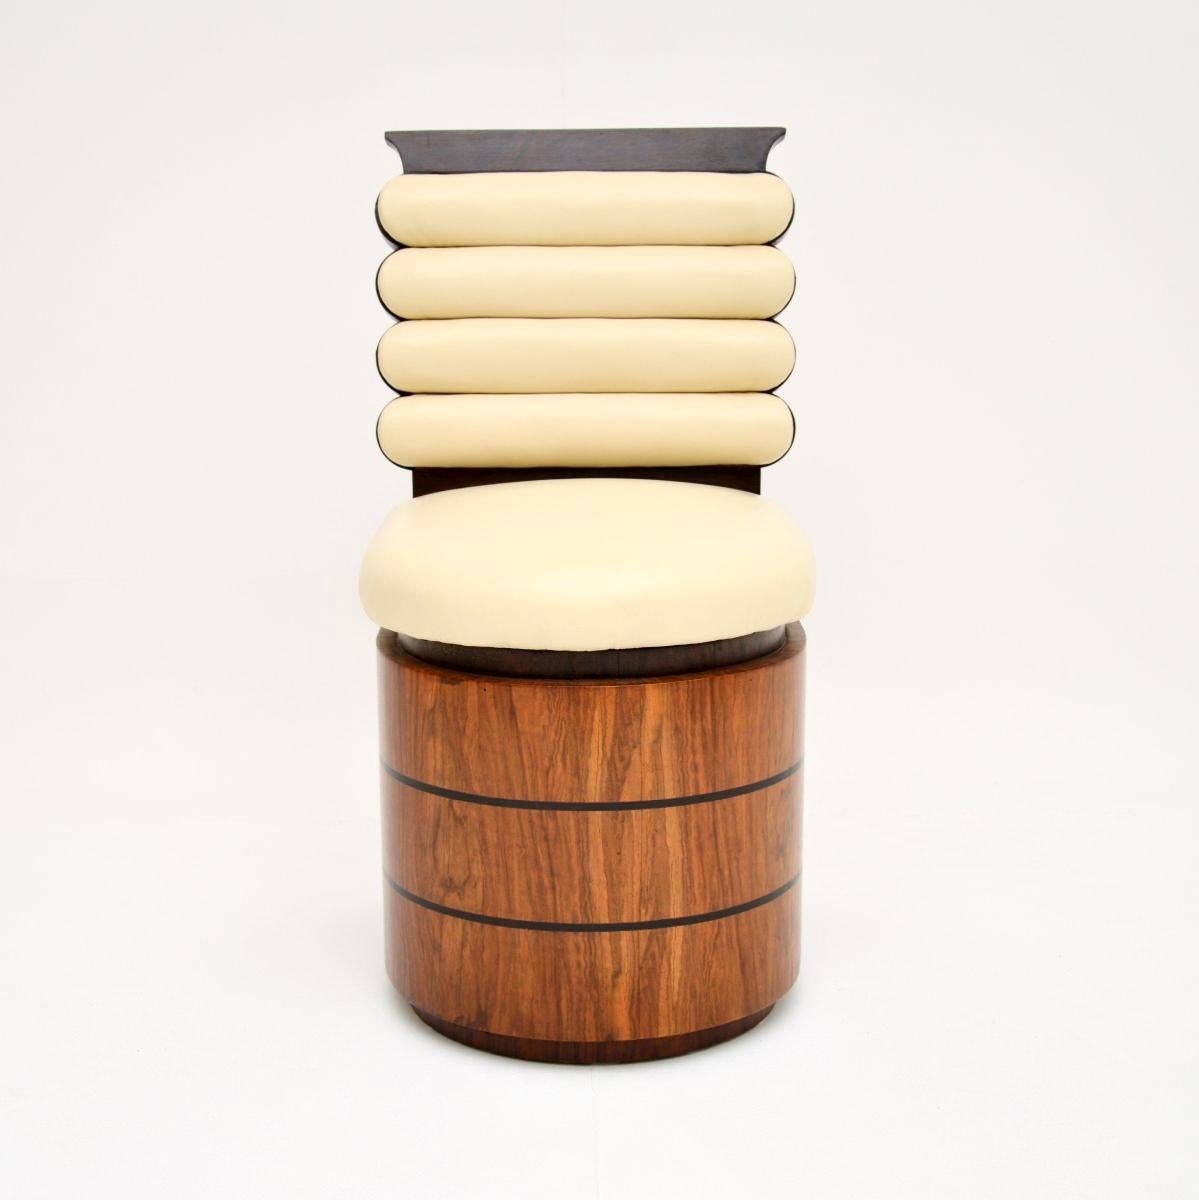 Une fantastique chaise de bureau / tabouret Art Déco en noyer et cuir. Probablement fabriqué en France, il date des années 1920-30.

Il est d'une qualité exceptionnelle et présente un design étonnant. La partie inférieure de la façade est en noyer.